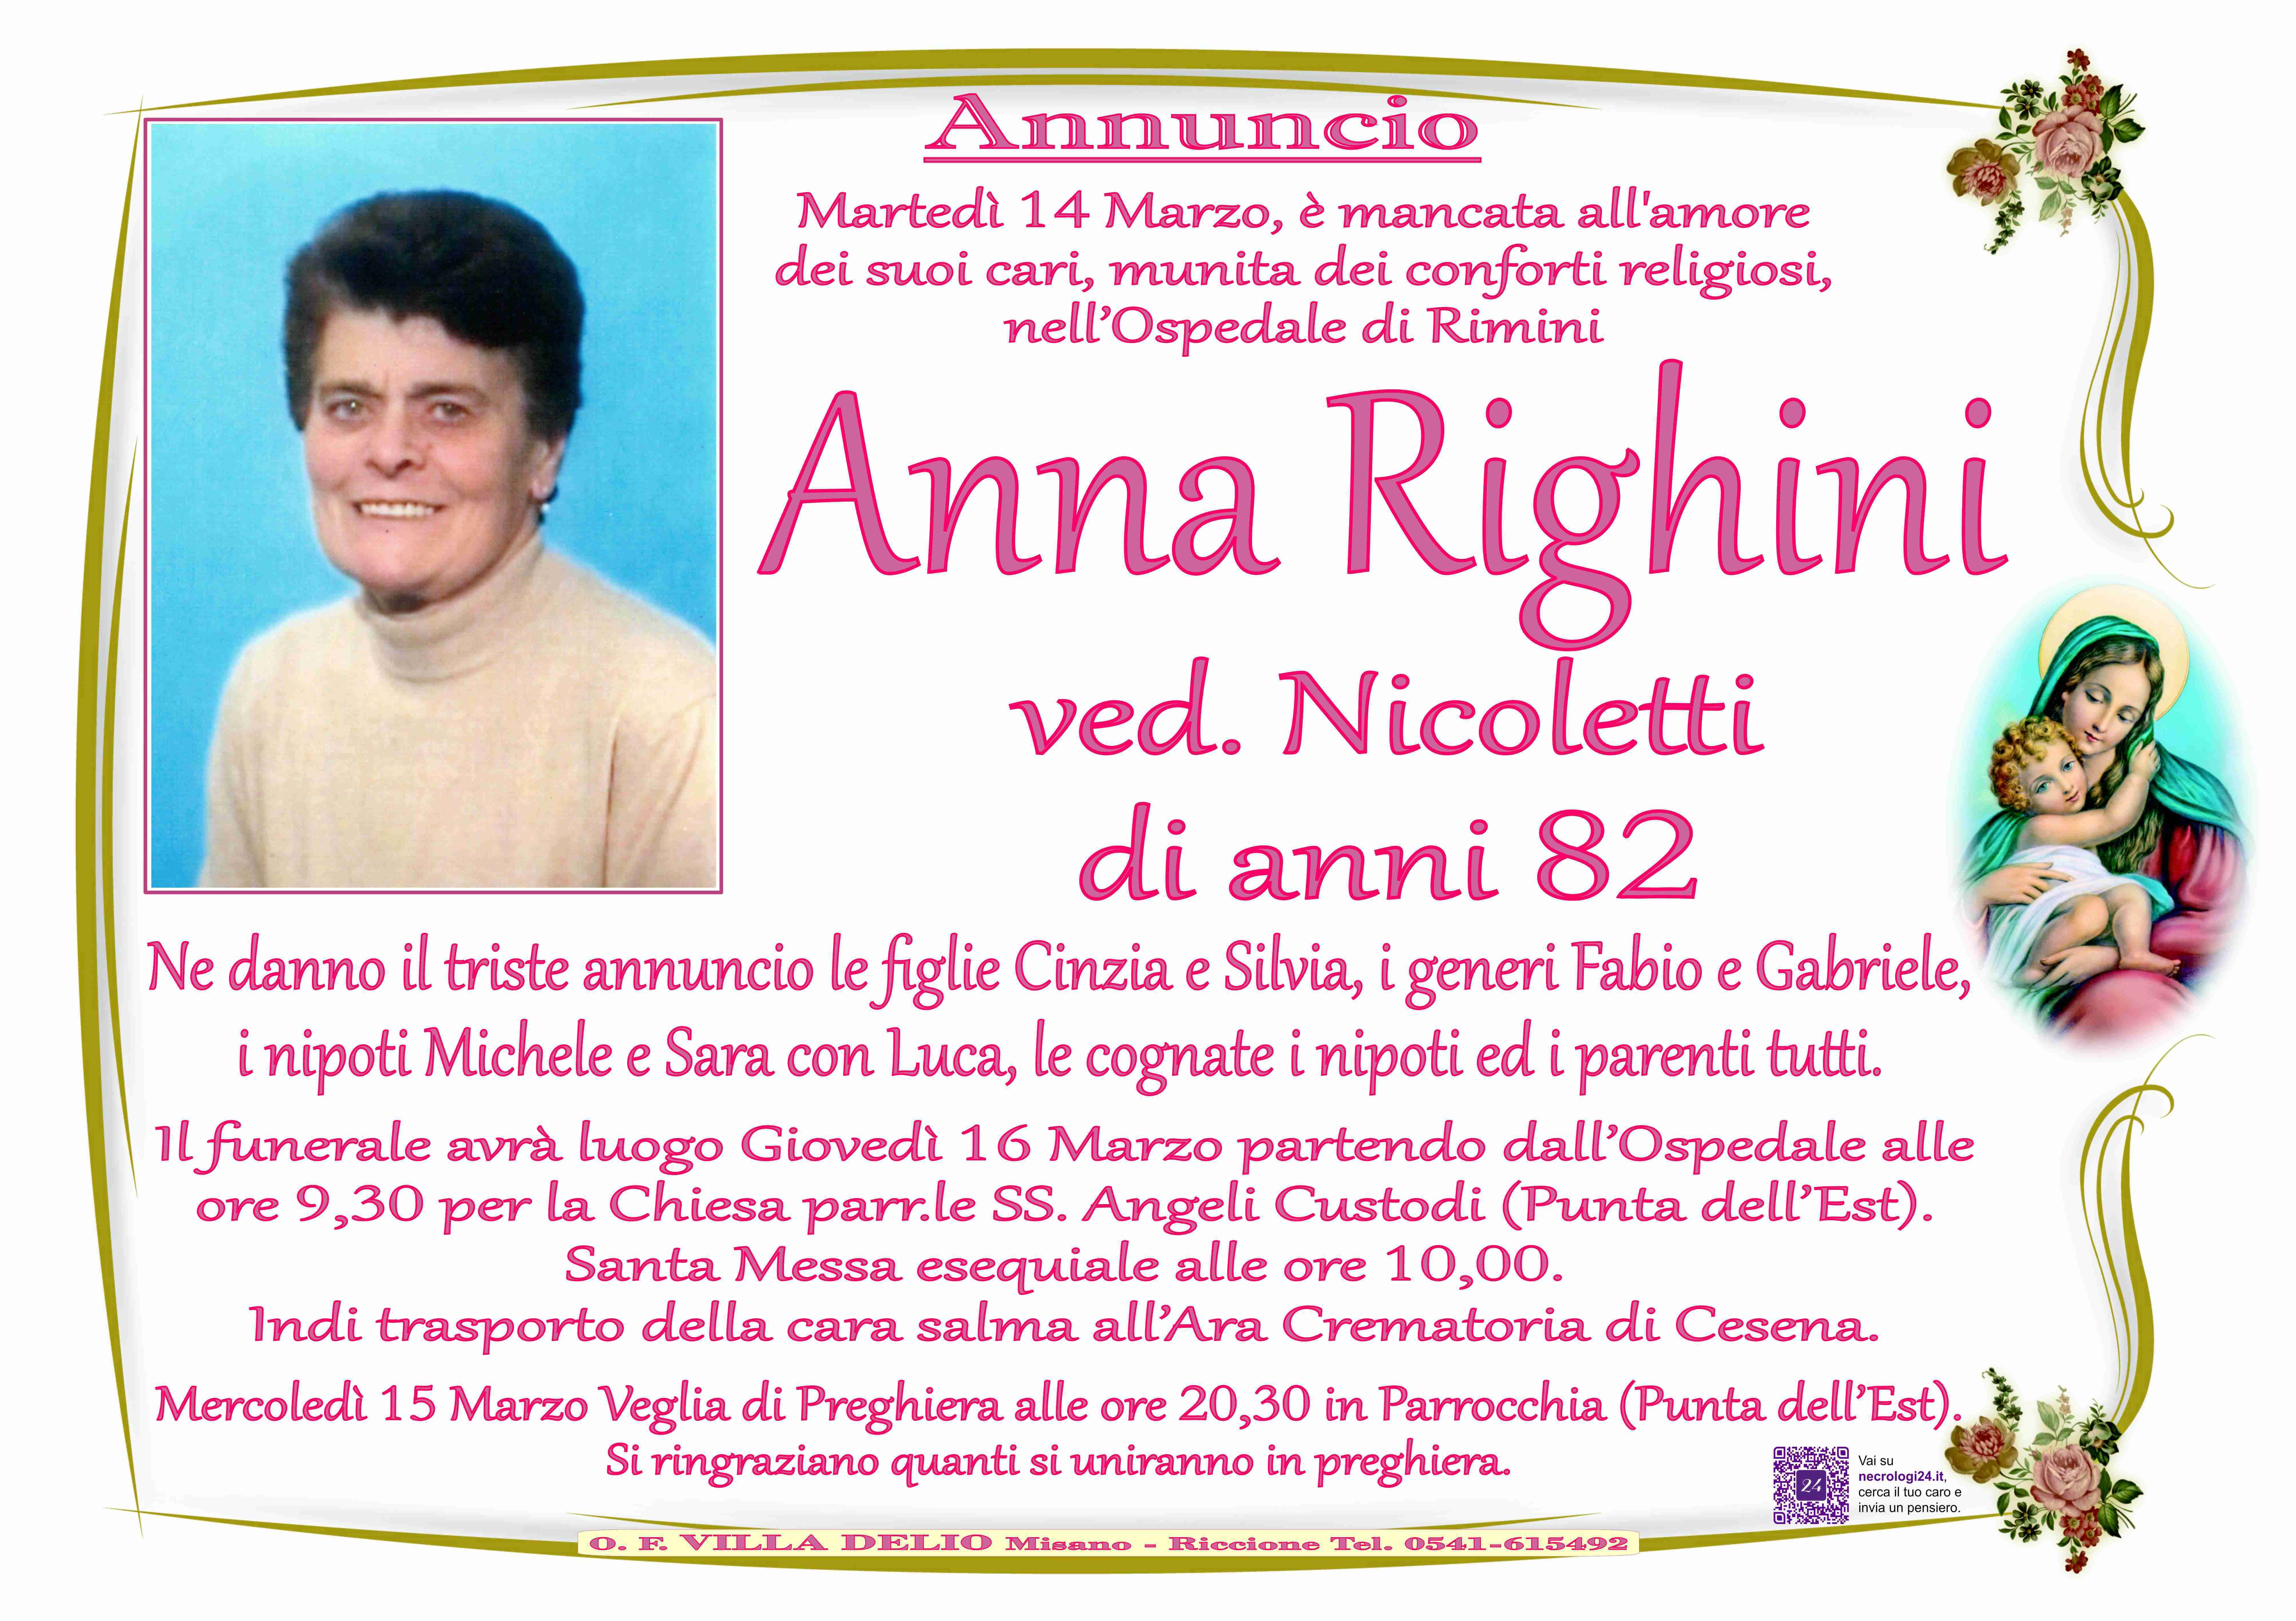 Anna Righini